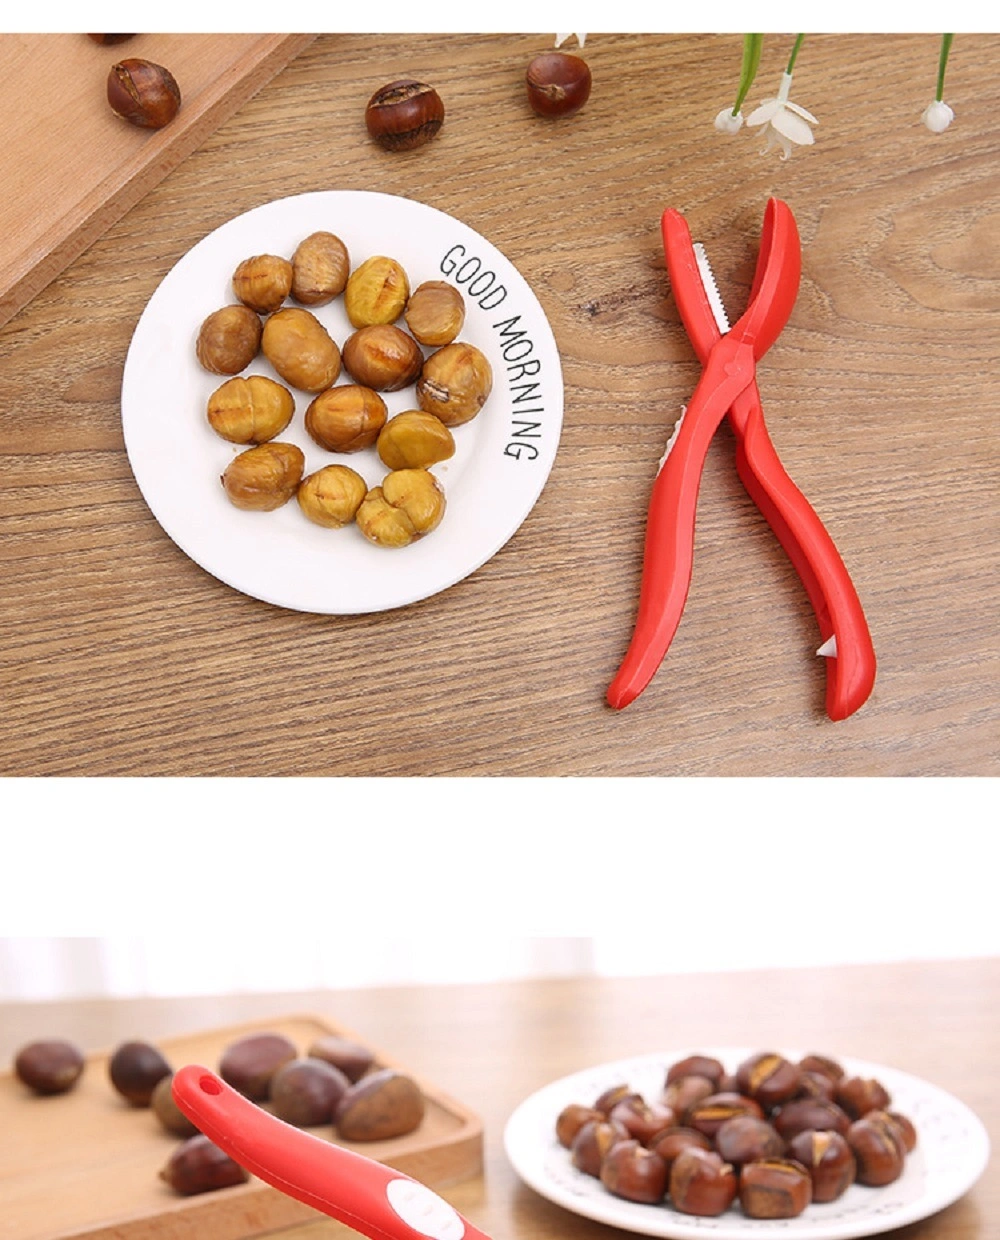 Red Cutter Scissors T Sheller Cracker for Chestnut Shell Nut Skins Cracks Bl18348